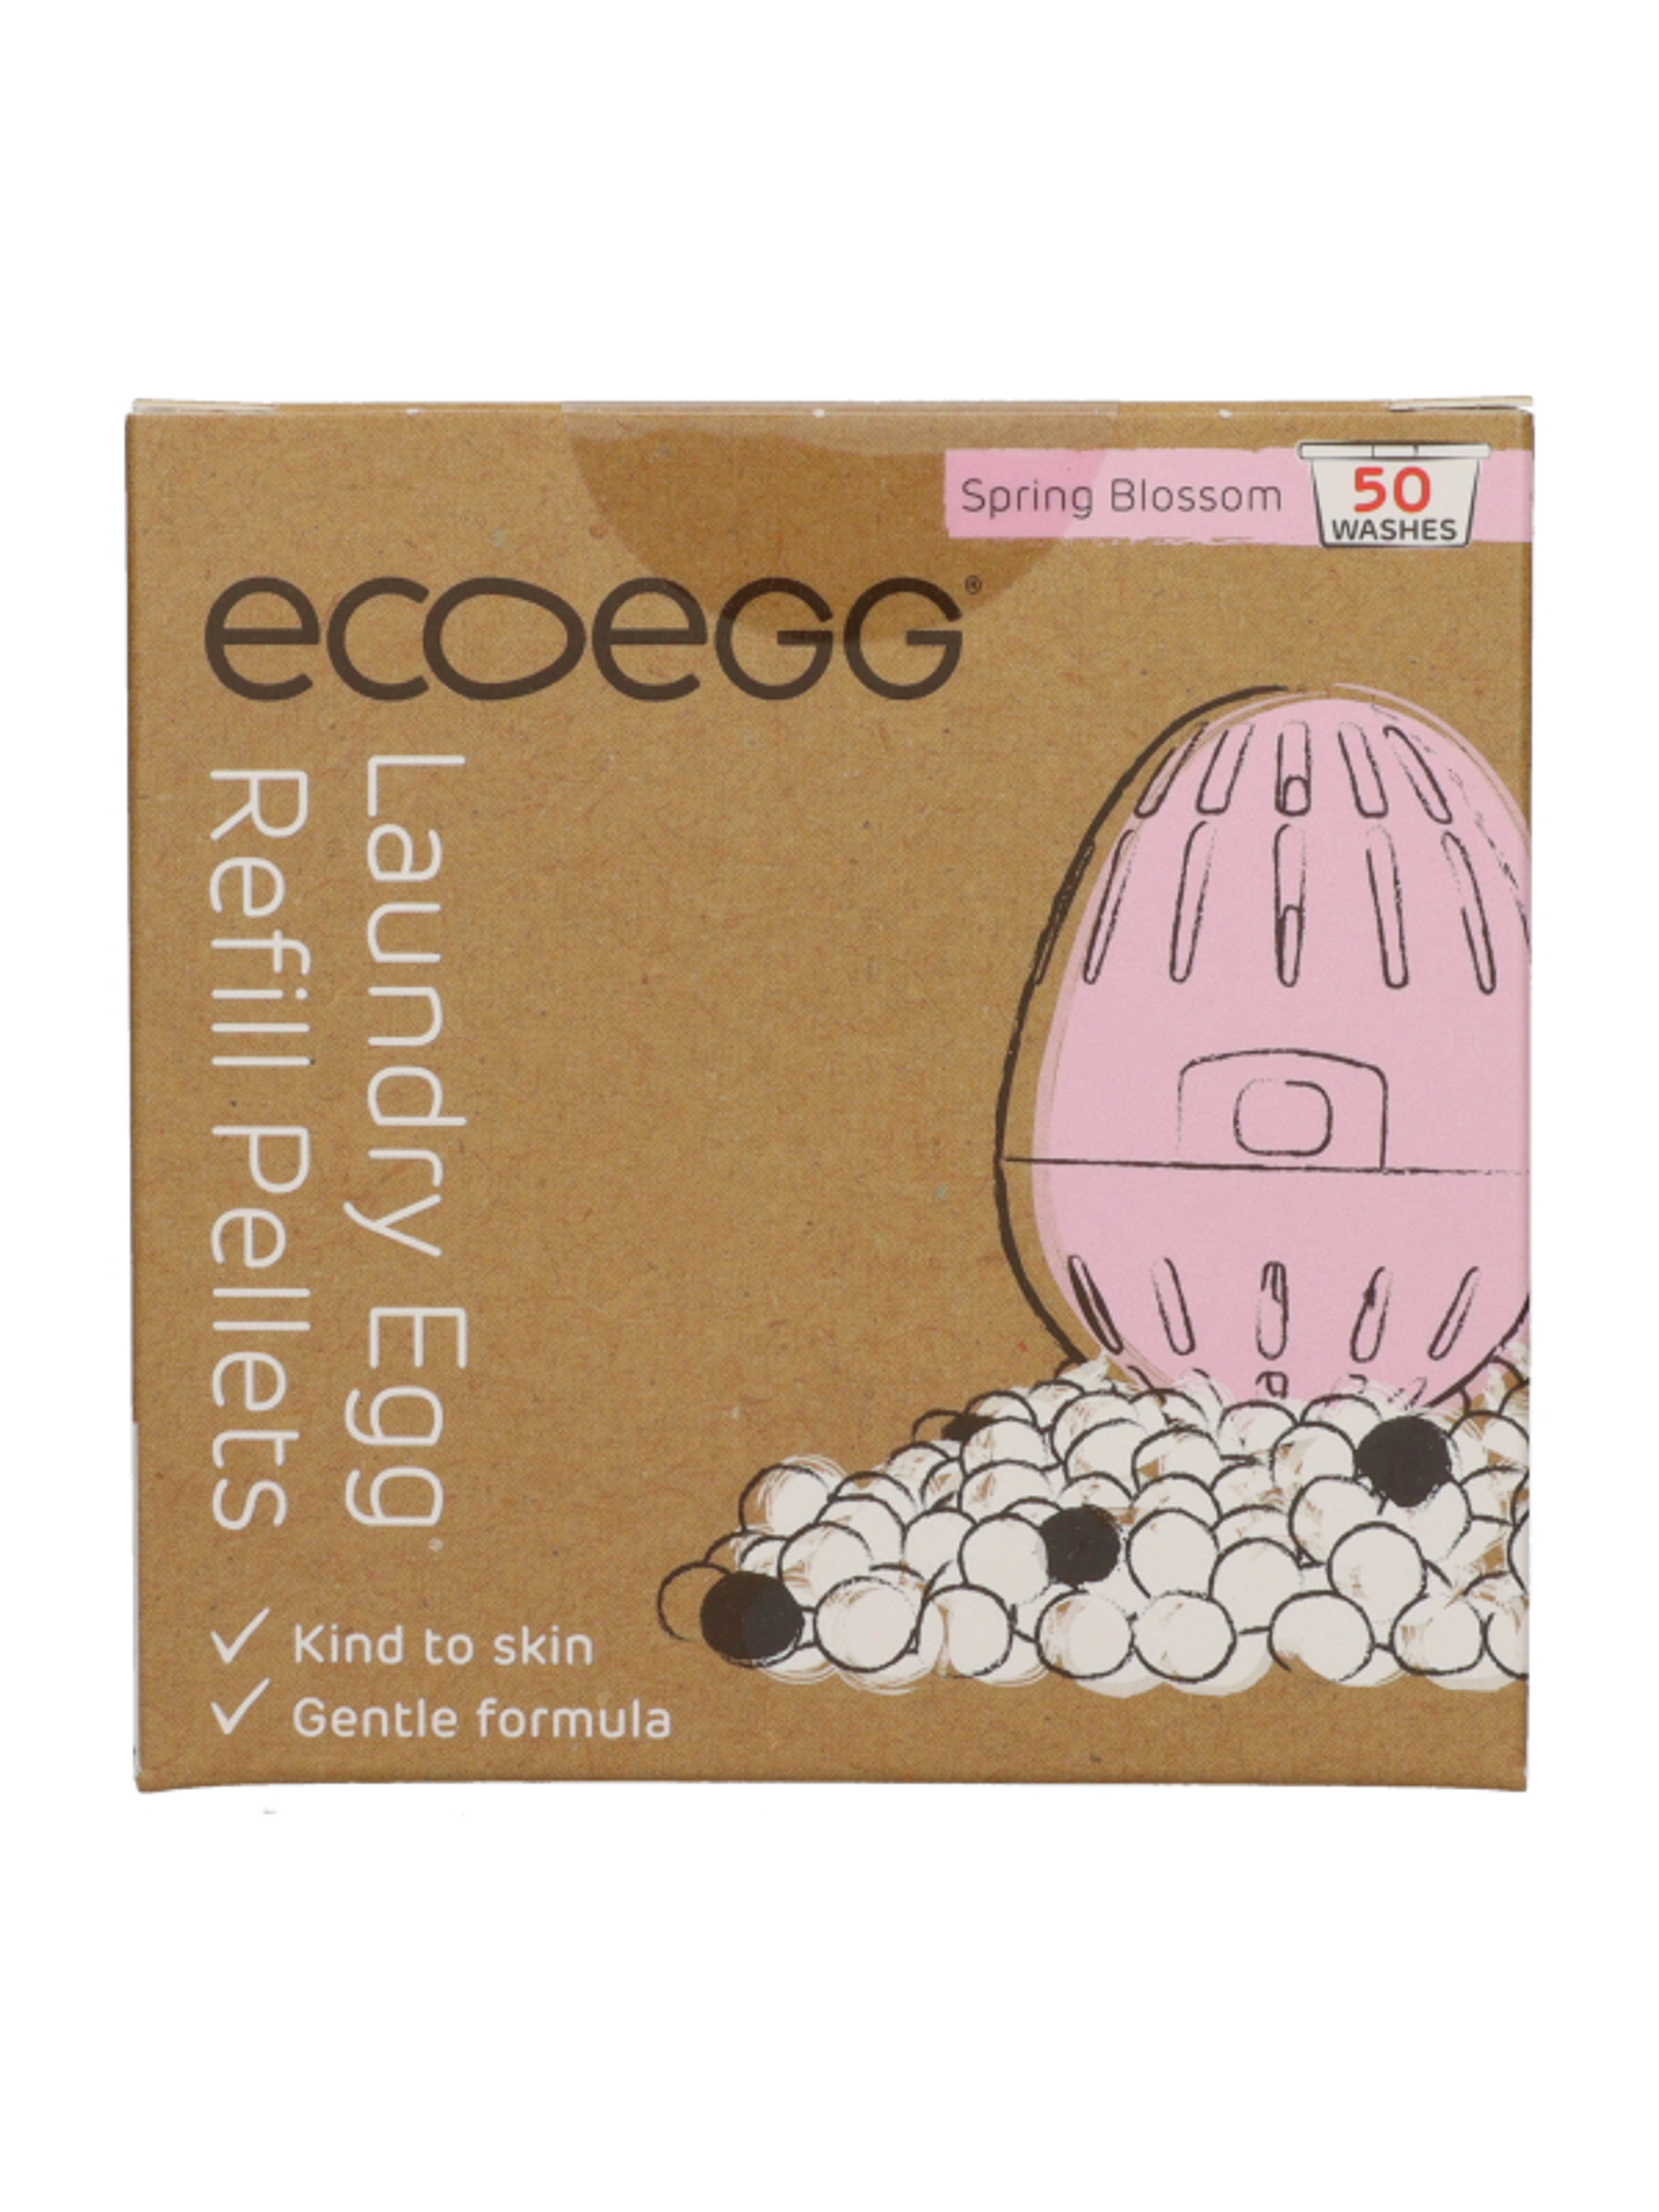 Ecoegg mosótojás utántöltő 50 mosás tavaszi virág illattal - 1 db-1